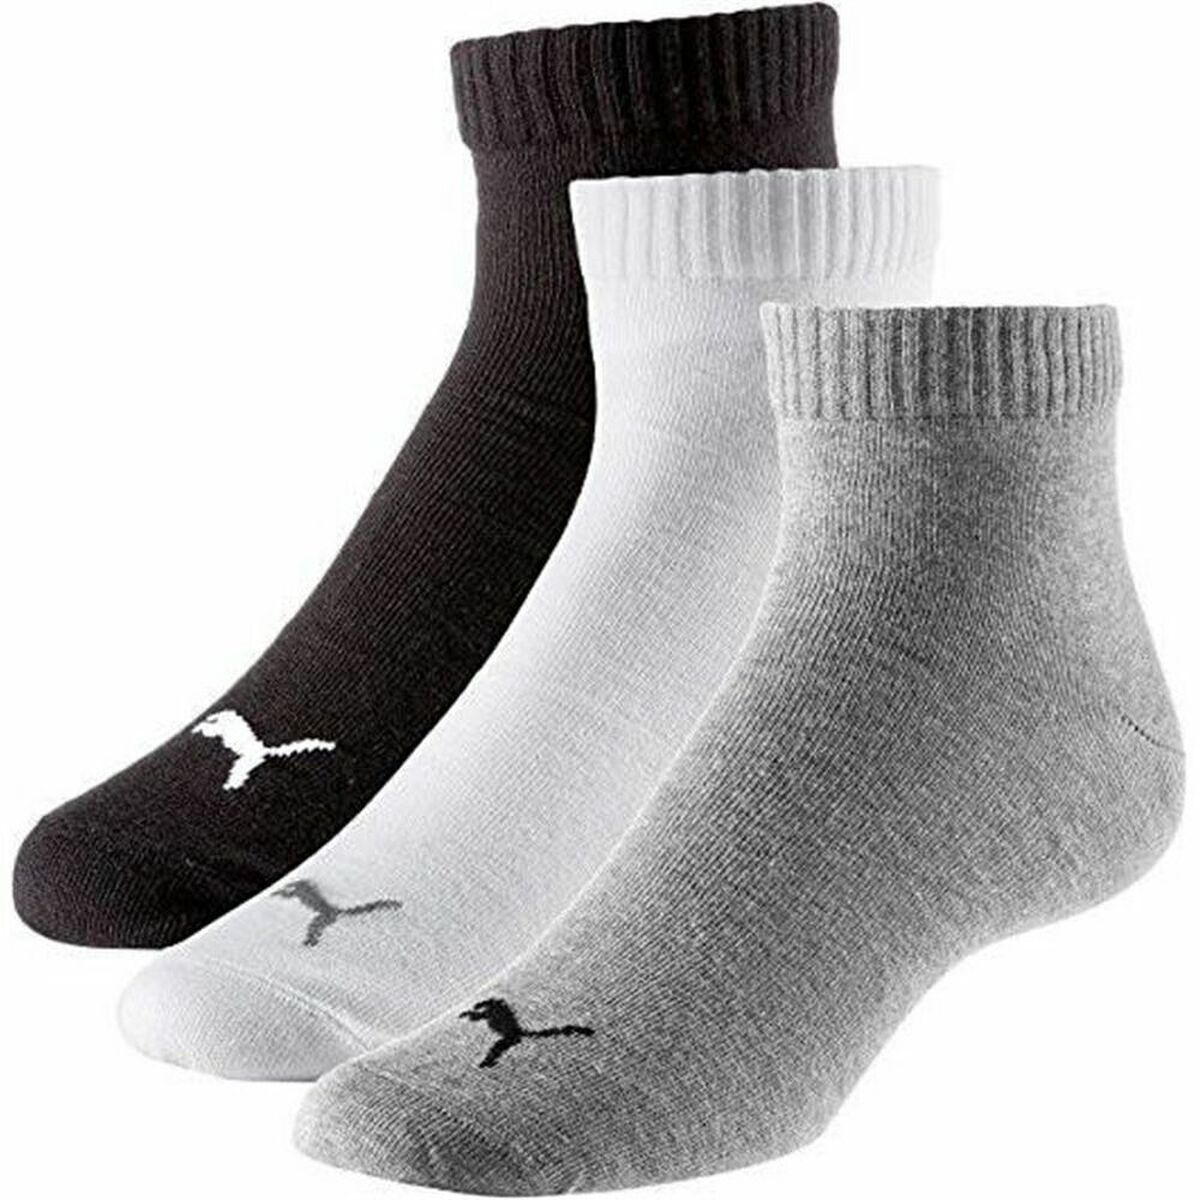 Sports Socks Puma 271080001 Black